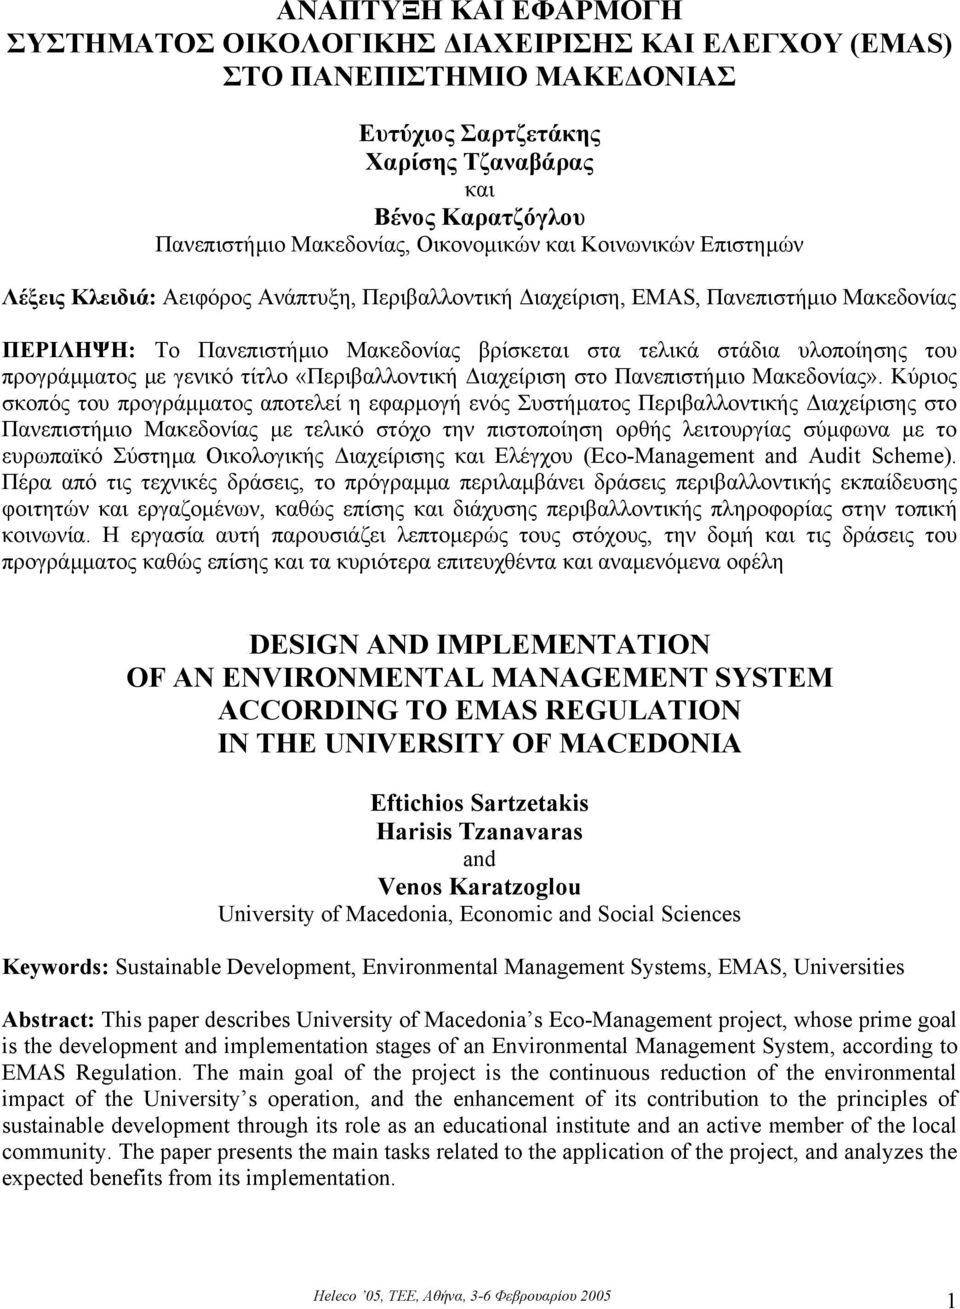 υλοποίησης του προγράµµατος µε γενικό τίτλο «Περιβαλλοντική ιαχείριση στο Πανεπιστήµιο Μακεδονίας».